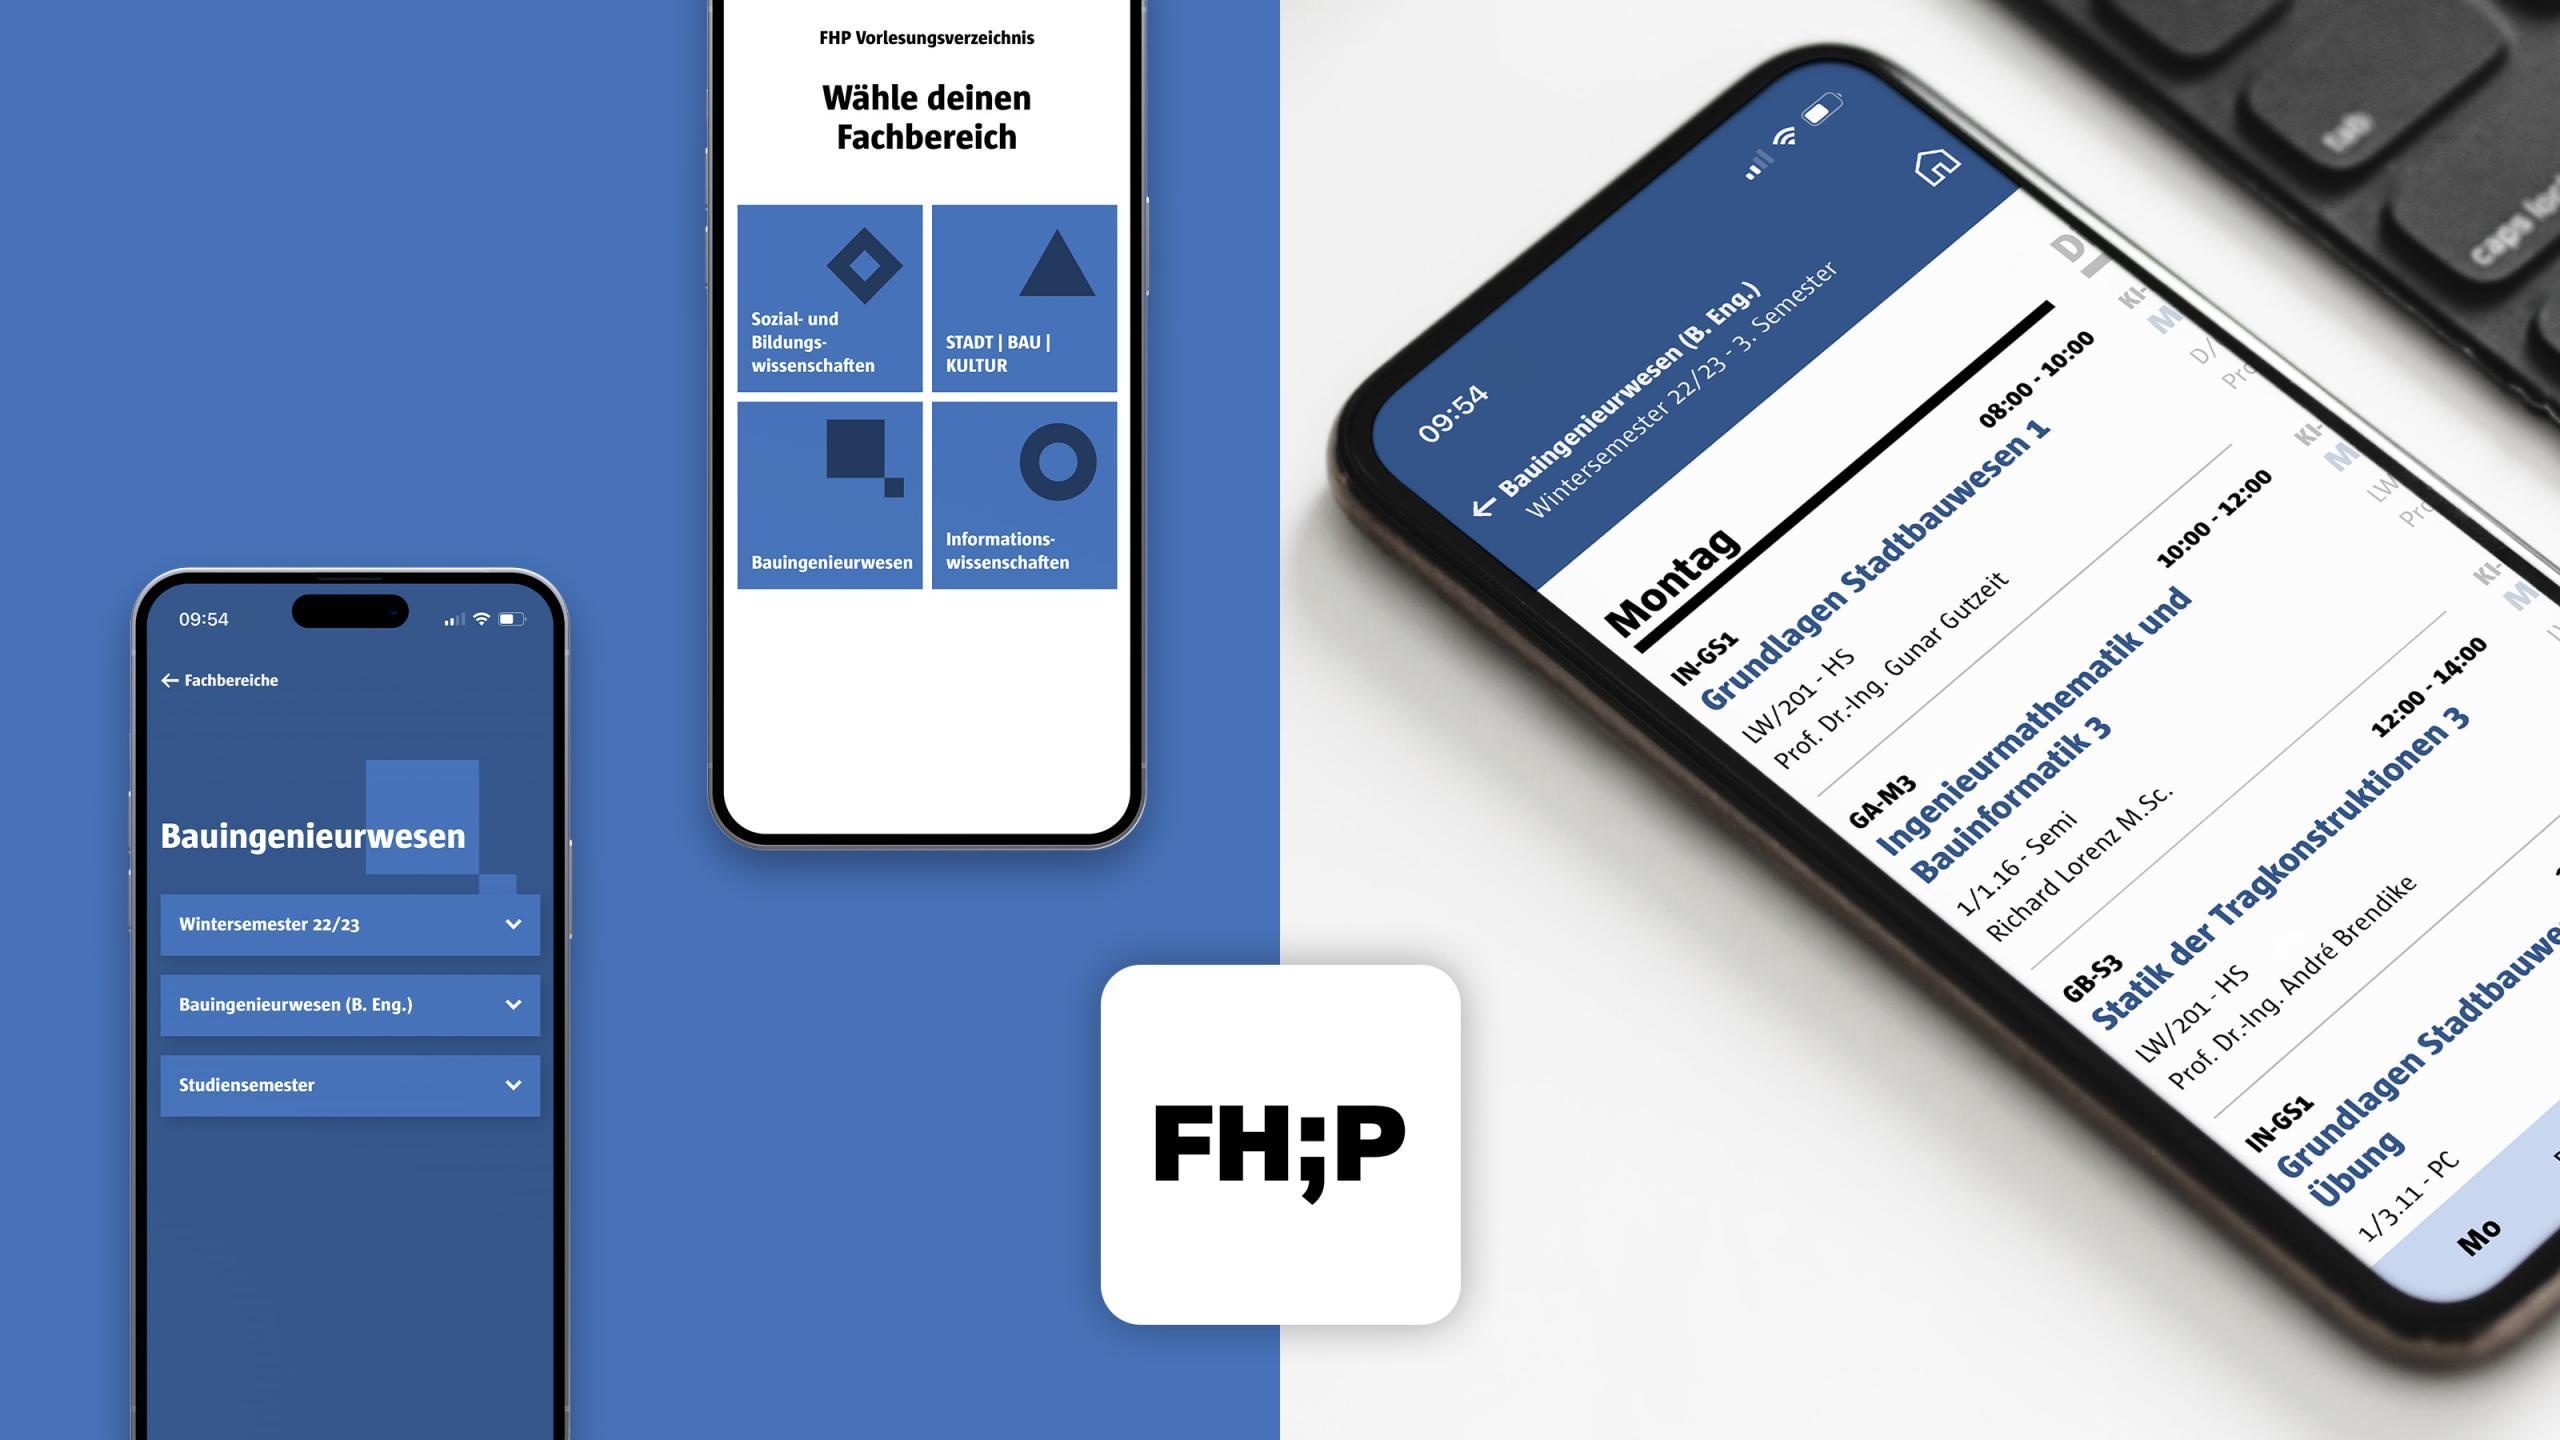 FHP VVZ App